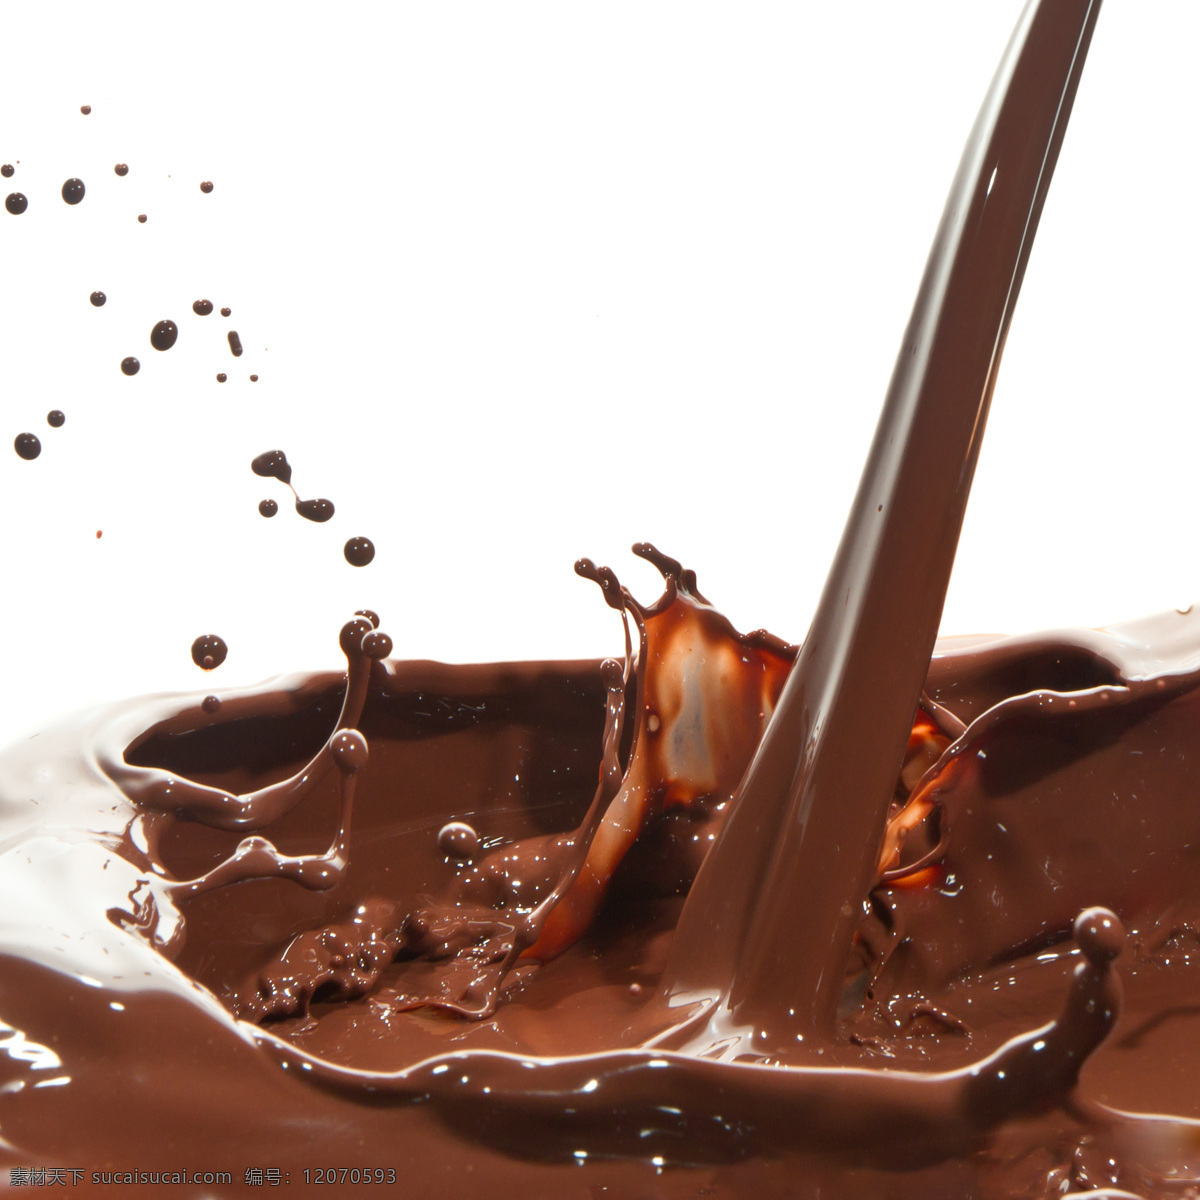 巧克力 动感巧克力 巧克力背景 巧克力酱 丝滑 朱古力 诱人的巧克力 液体 情人节美食 咖啡 西餐美食 餐饮美食